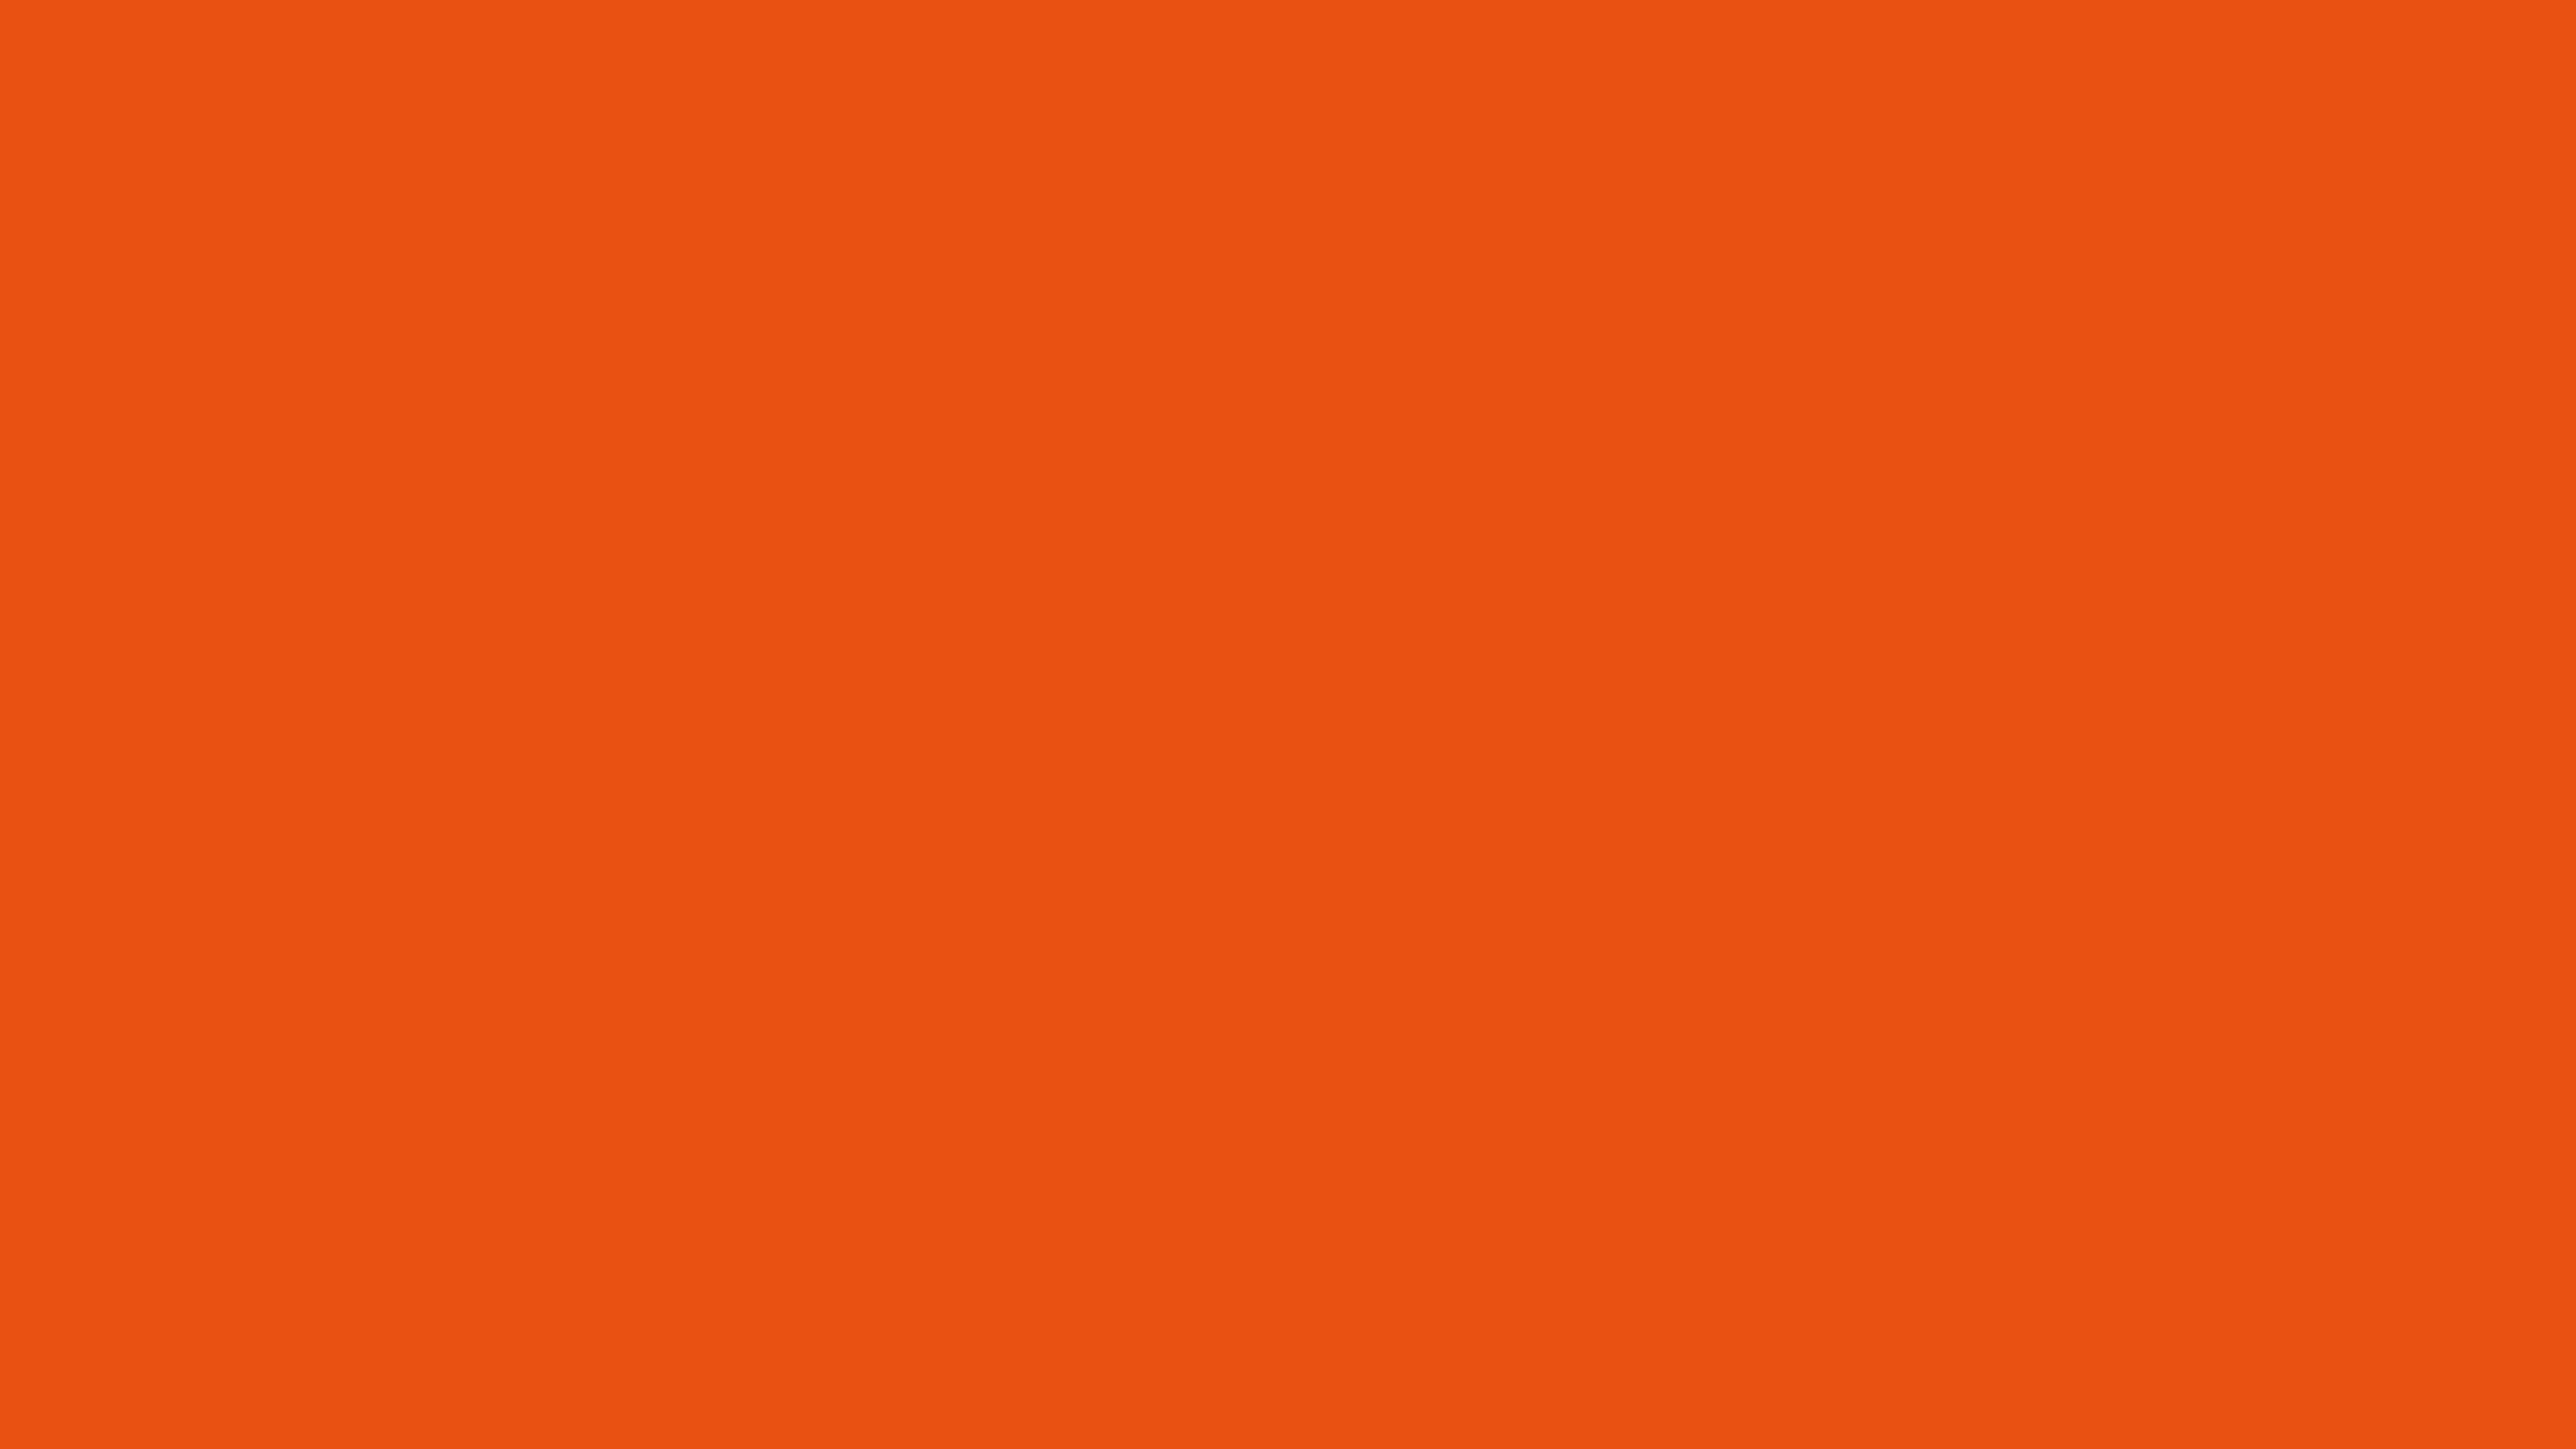 Bạn là một người yêu thích màu cam hoài cổ? Hãy đến và xem ngay thông tin mới nhất về màu sắc này để tìm thêm nhiều ý tưởng sáng tạo nhất. Hình ảnh liên quan đến từ khoá này sẽ giúp bạn khám phá thêm những mặt trái và đắm say trong màu sắc cam.